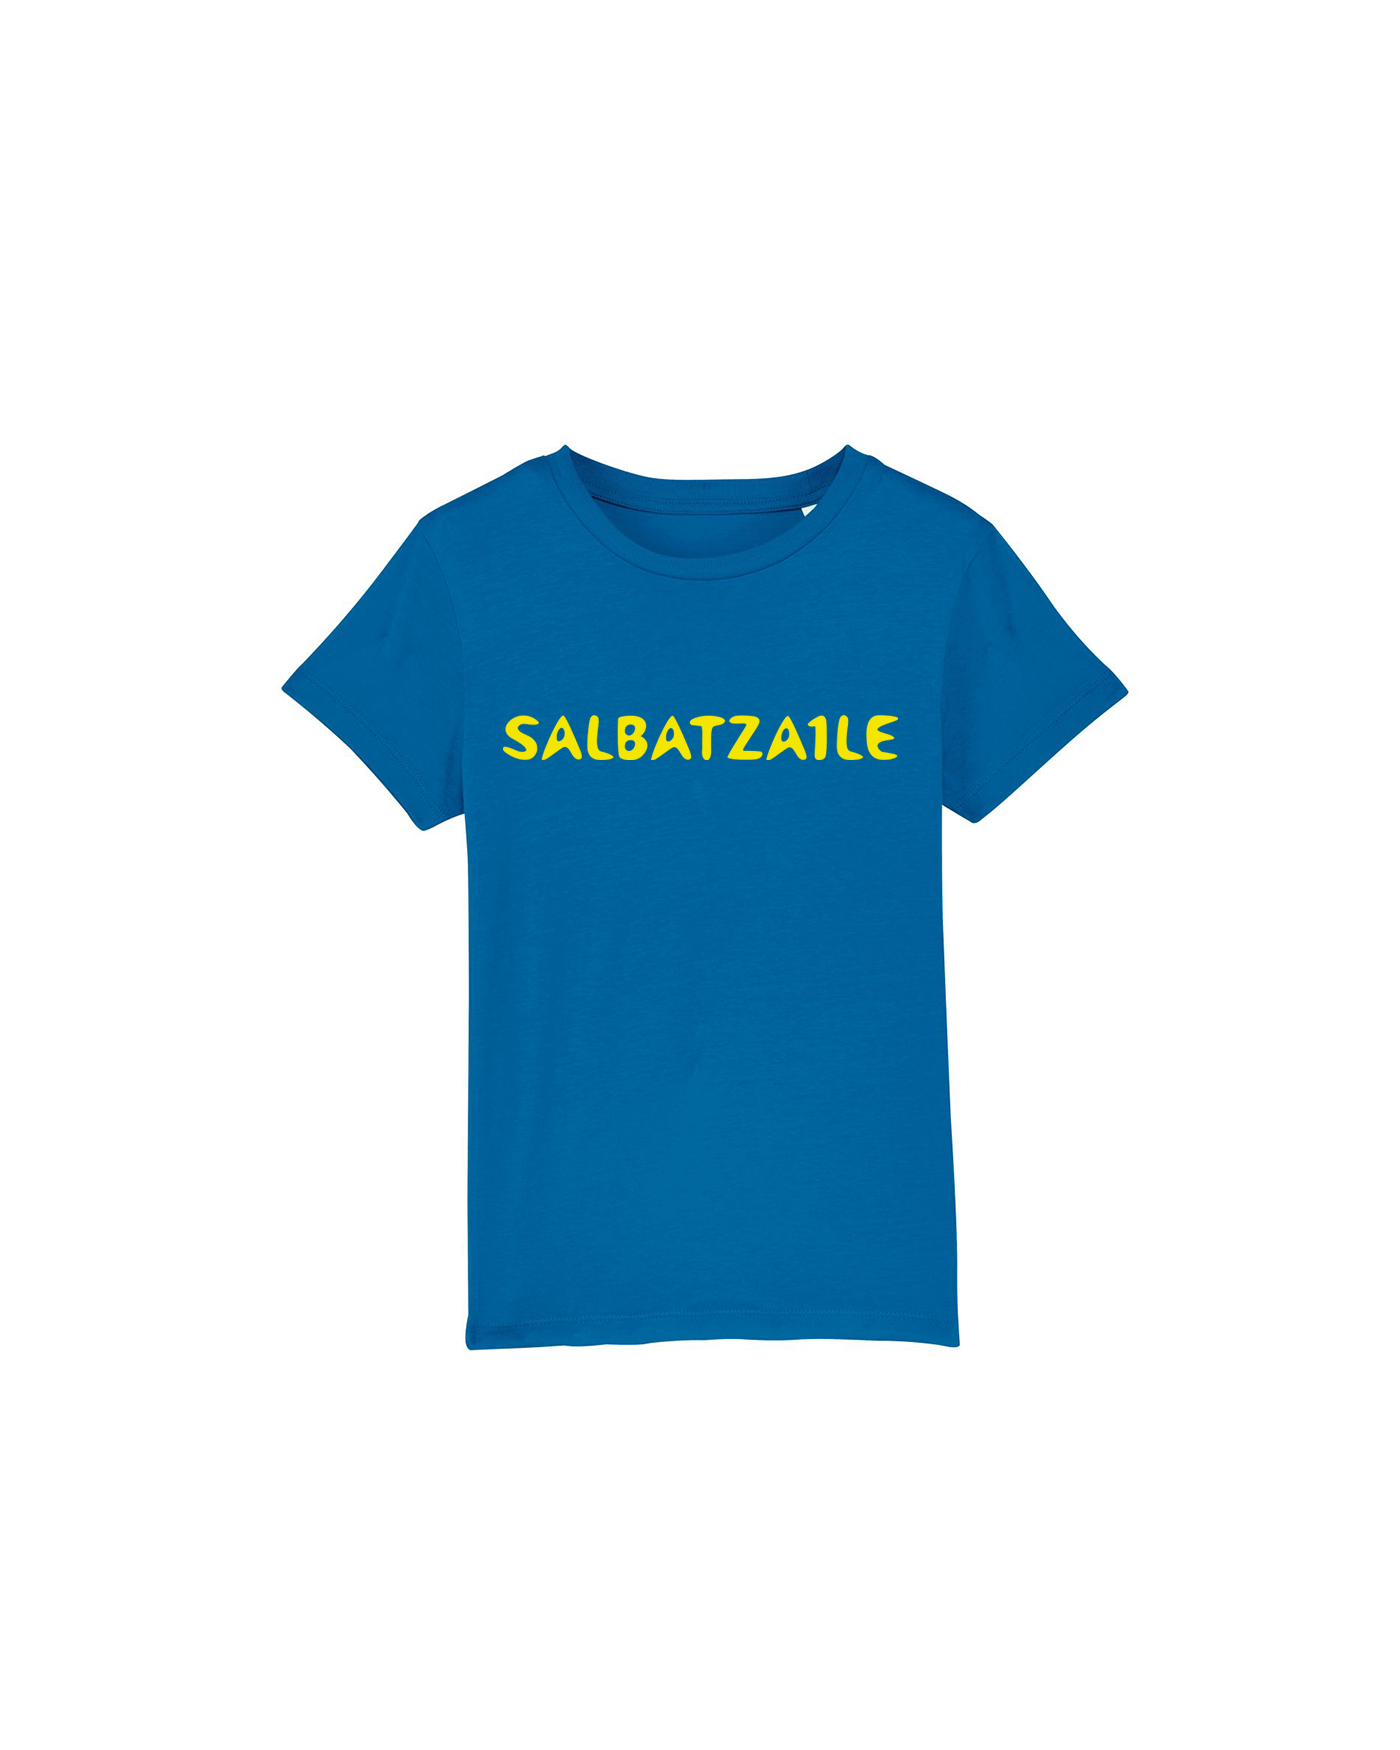 Salbatzaile Crew - Infantil